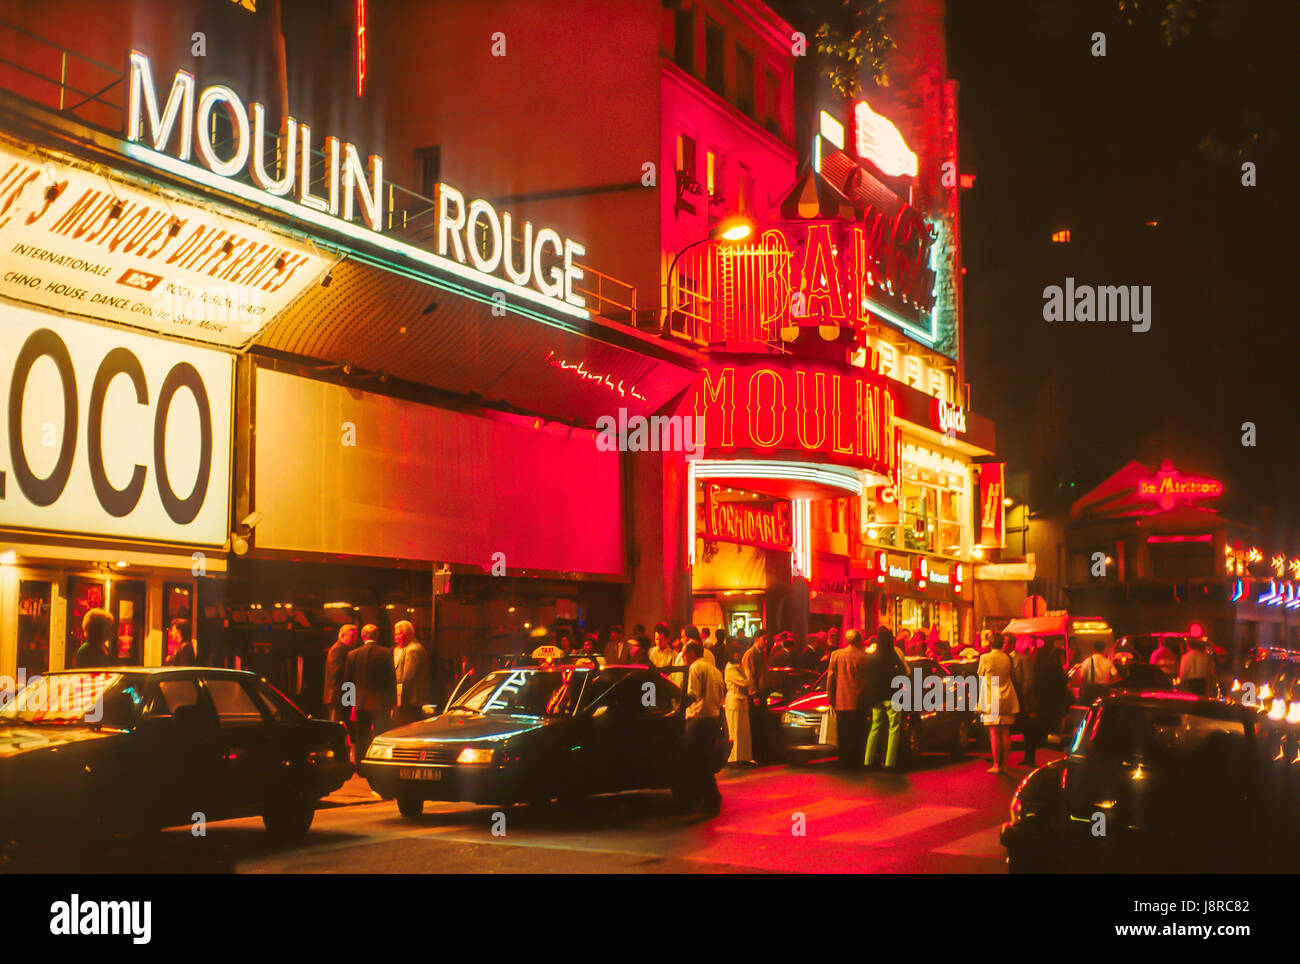 La célèbre discothèque Moulin Rouge, Boulevard de Clichy, Paris, France. Banque D'Images